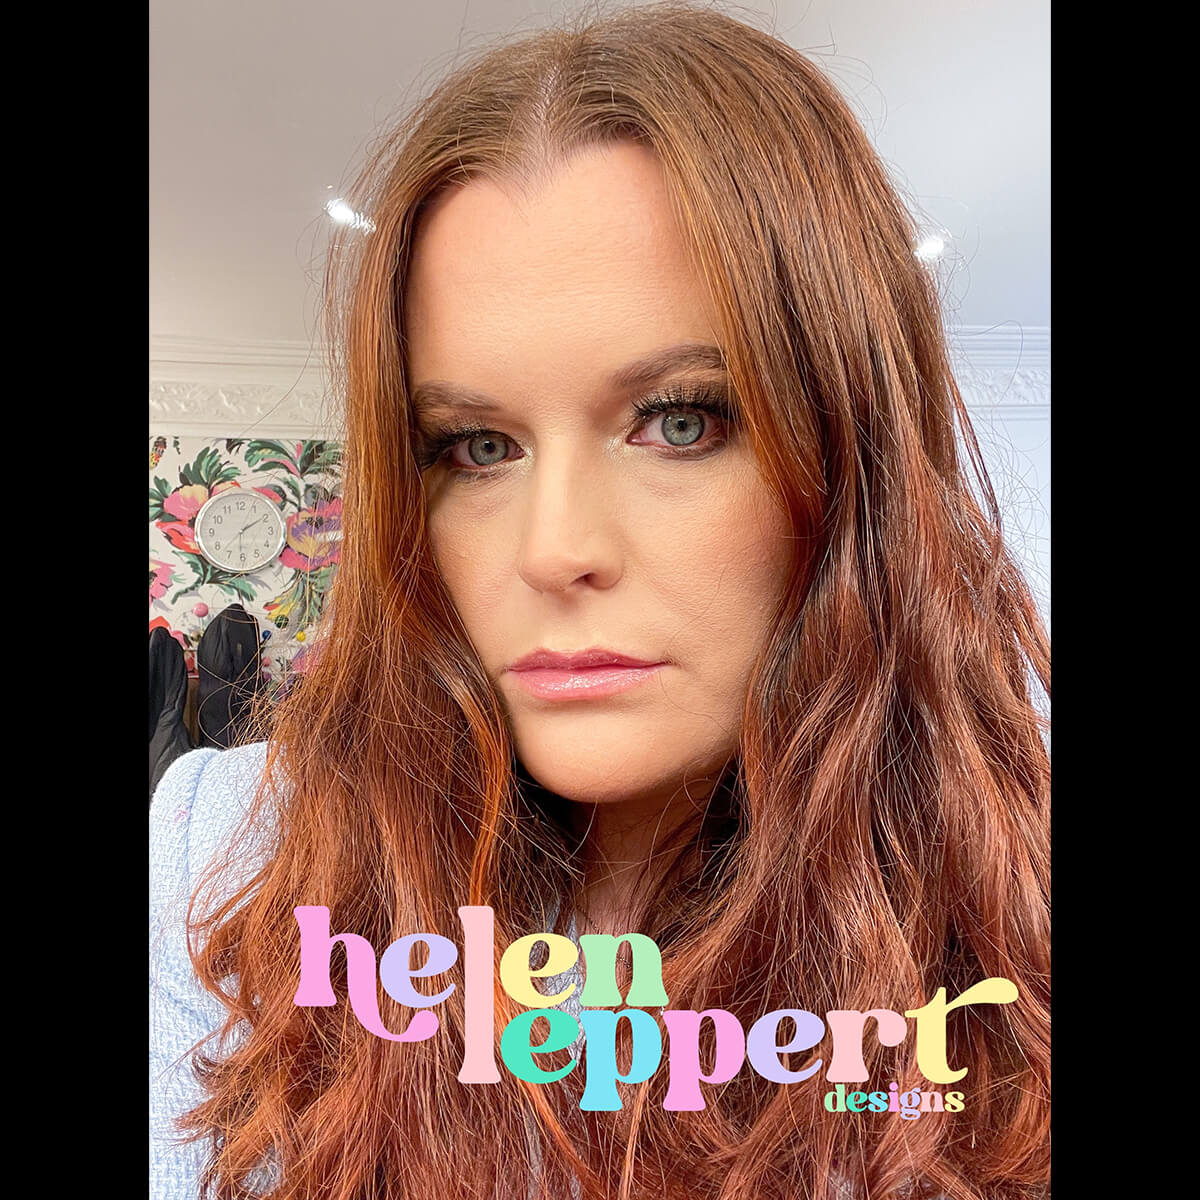 Helen Leppert Designs